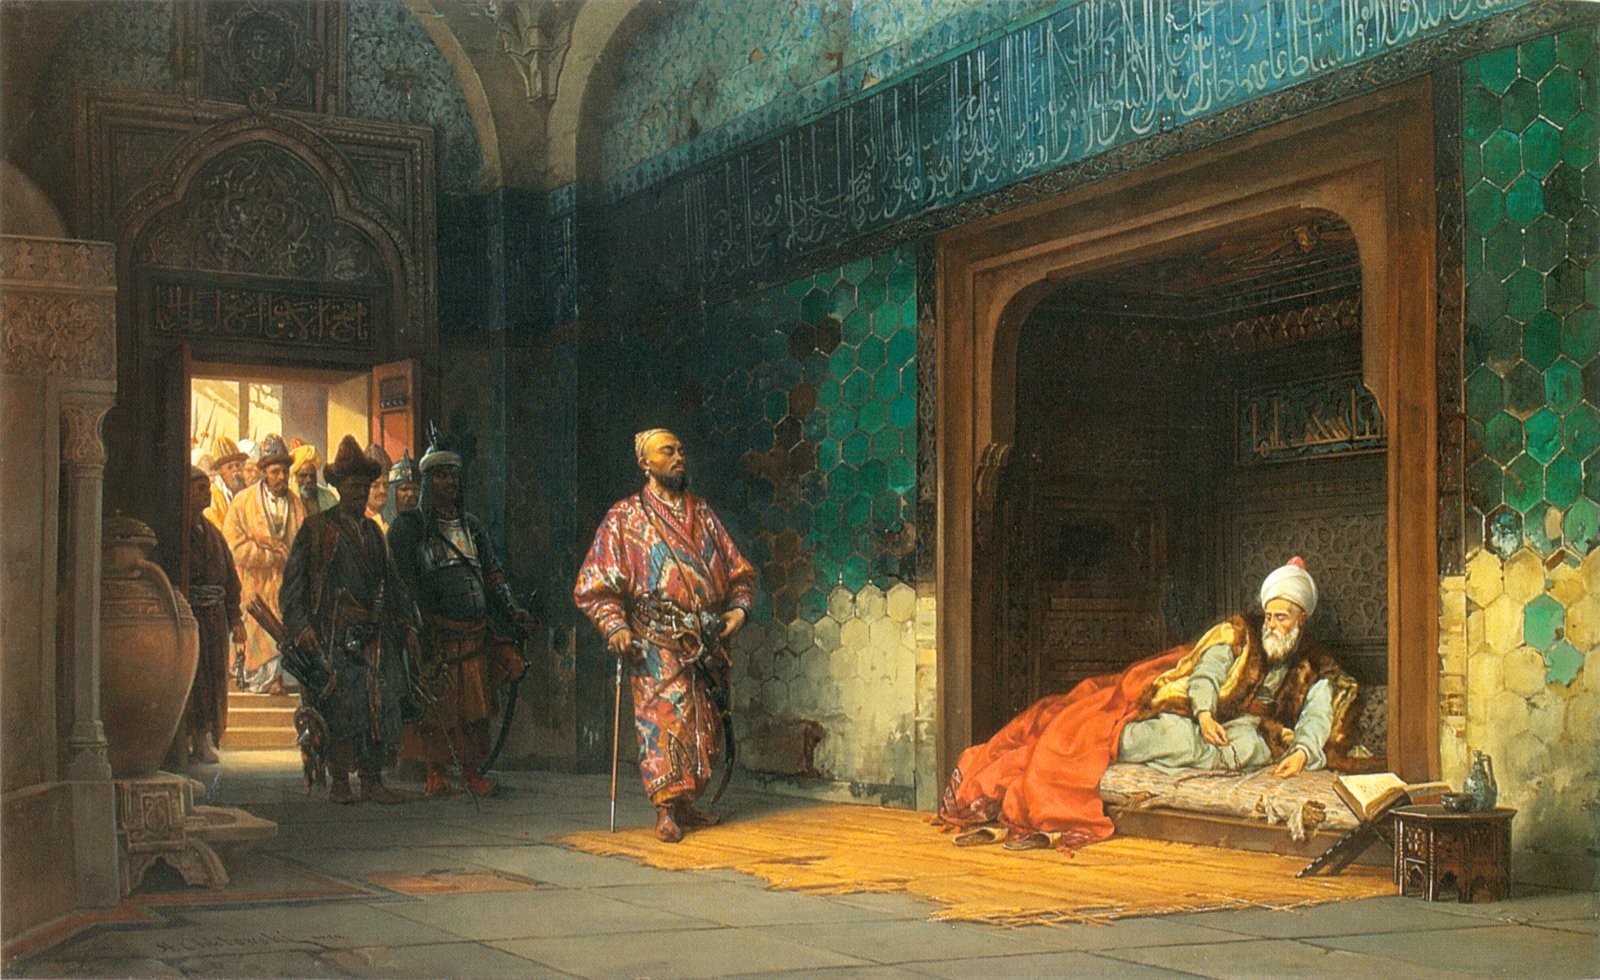 artistic, ottoman empire